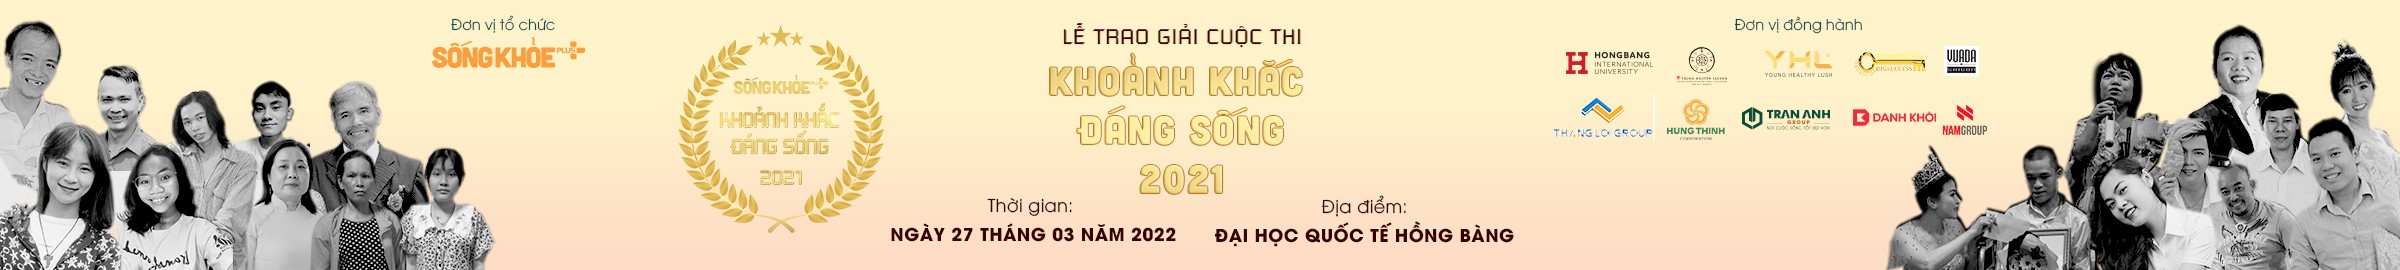 TRAO GIAI CUOC THI KHOANH KHAC DANG SONG NAM 2021